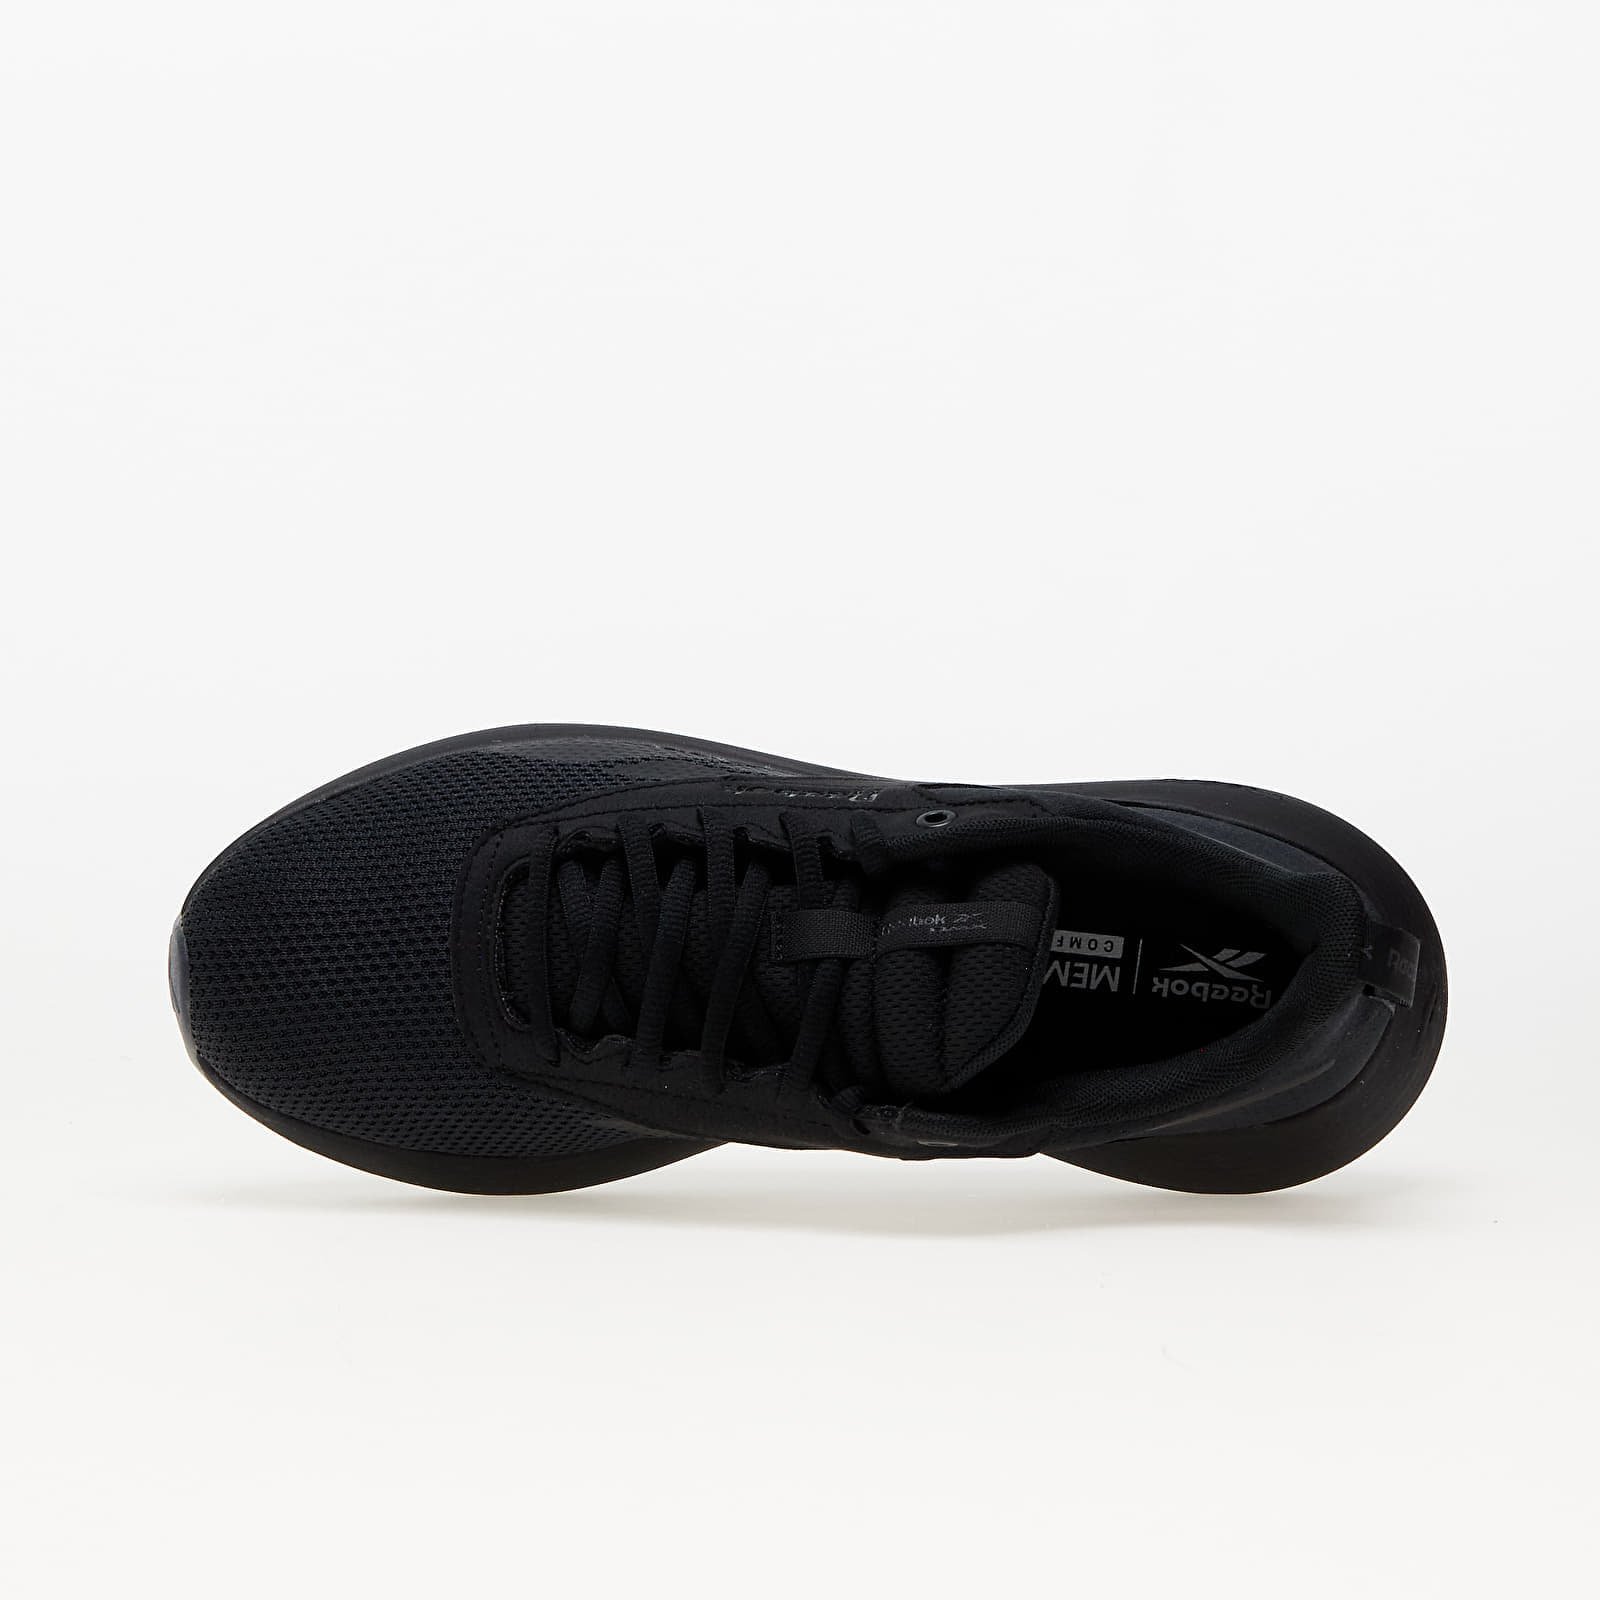 DMX Comfort + Black, Low-top sneakers